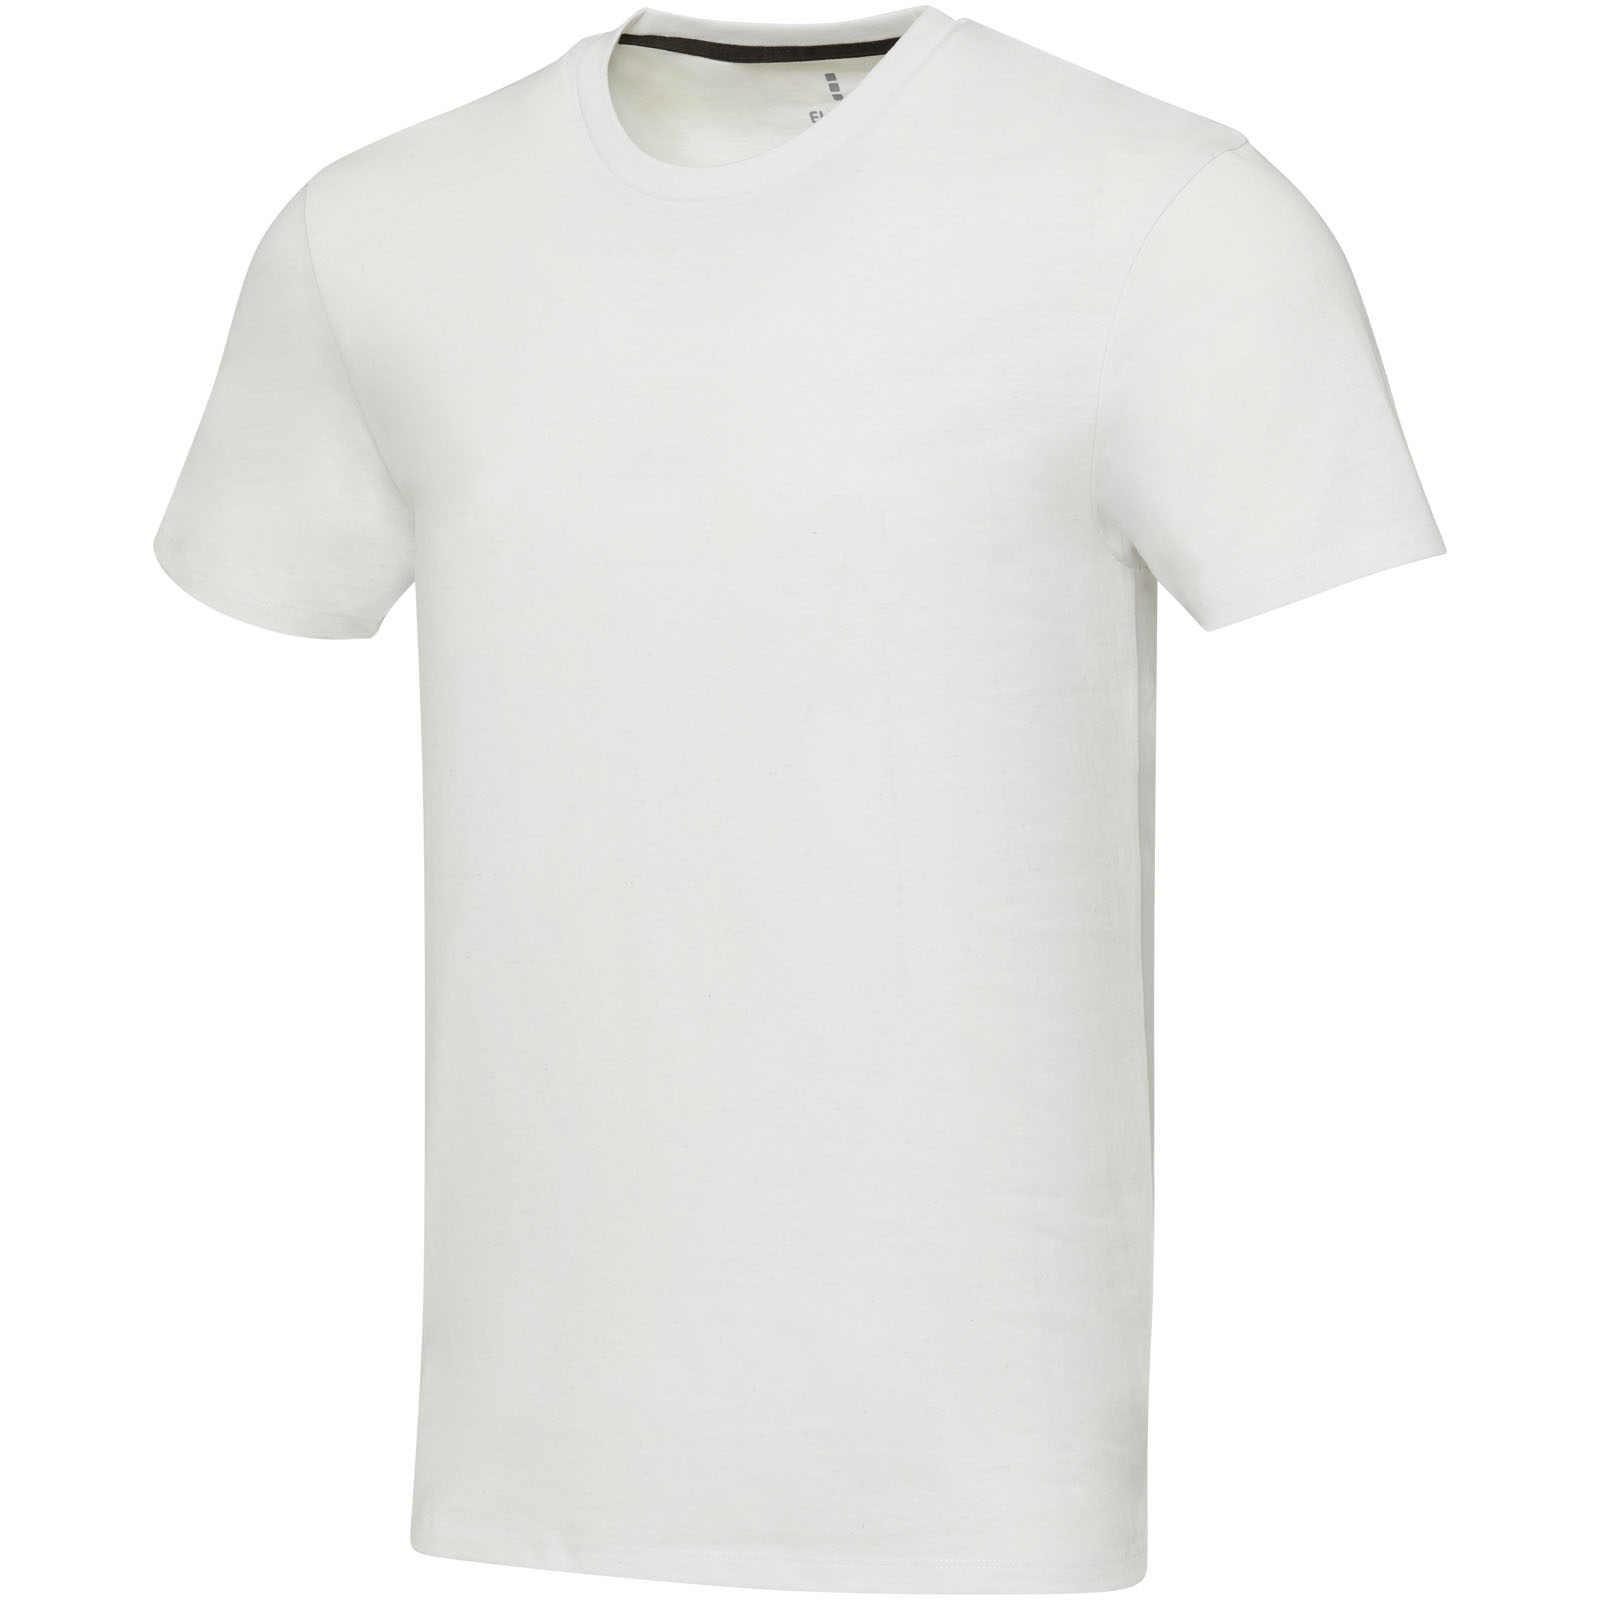 Vêtements - T-shirt recyclé Avalite unisexe à manches courtes Aware™